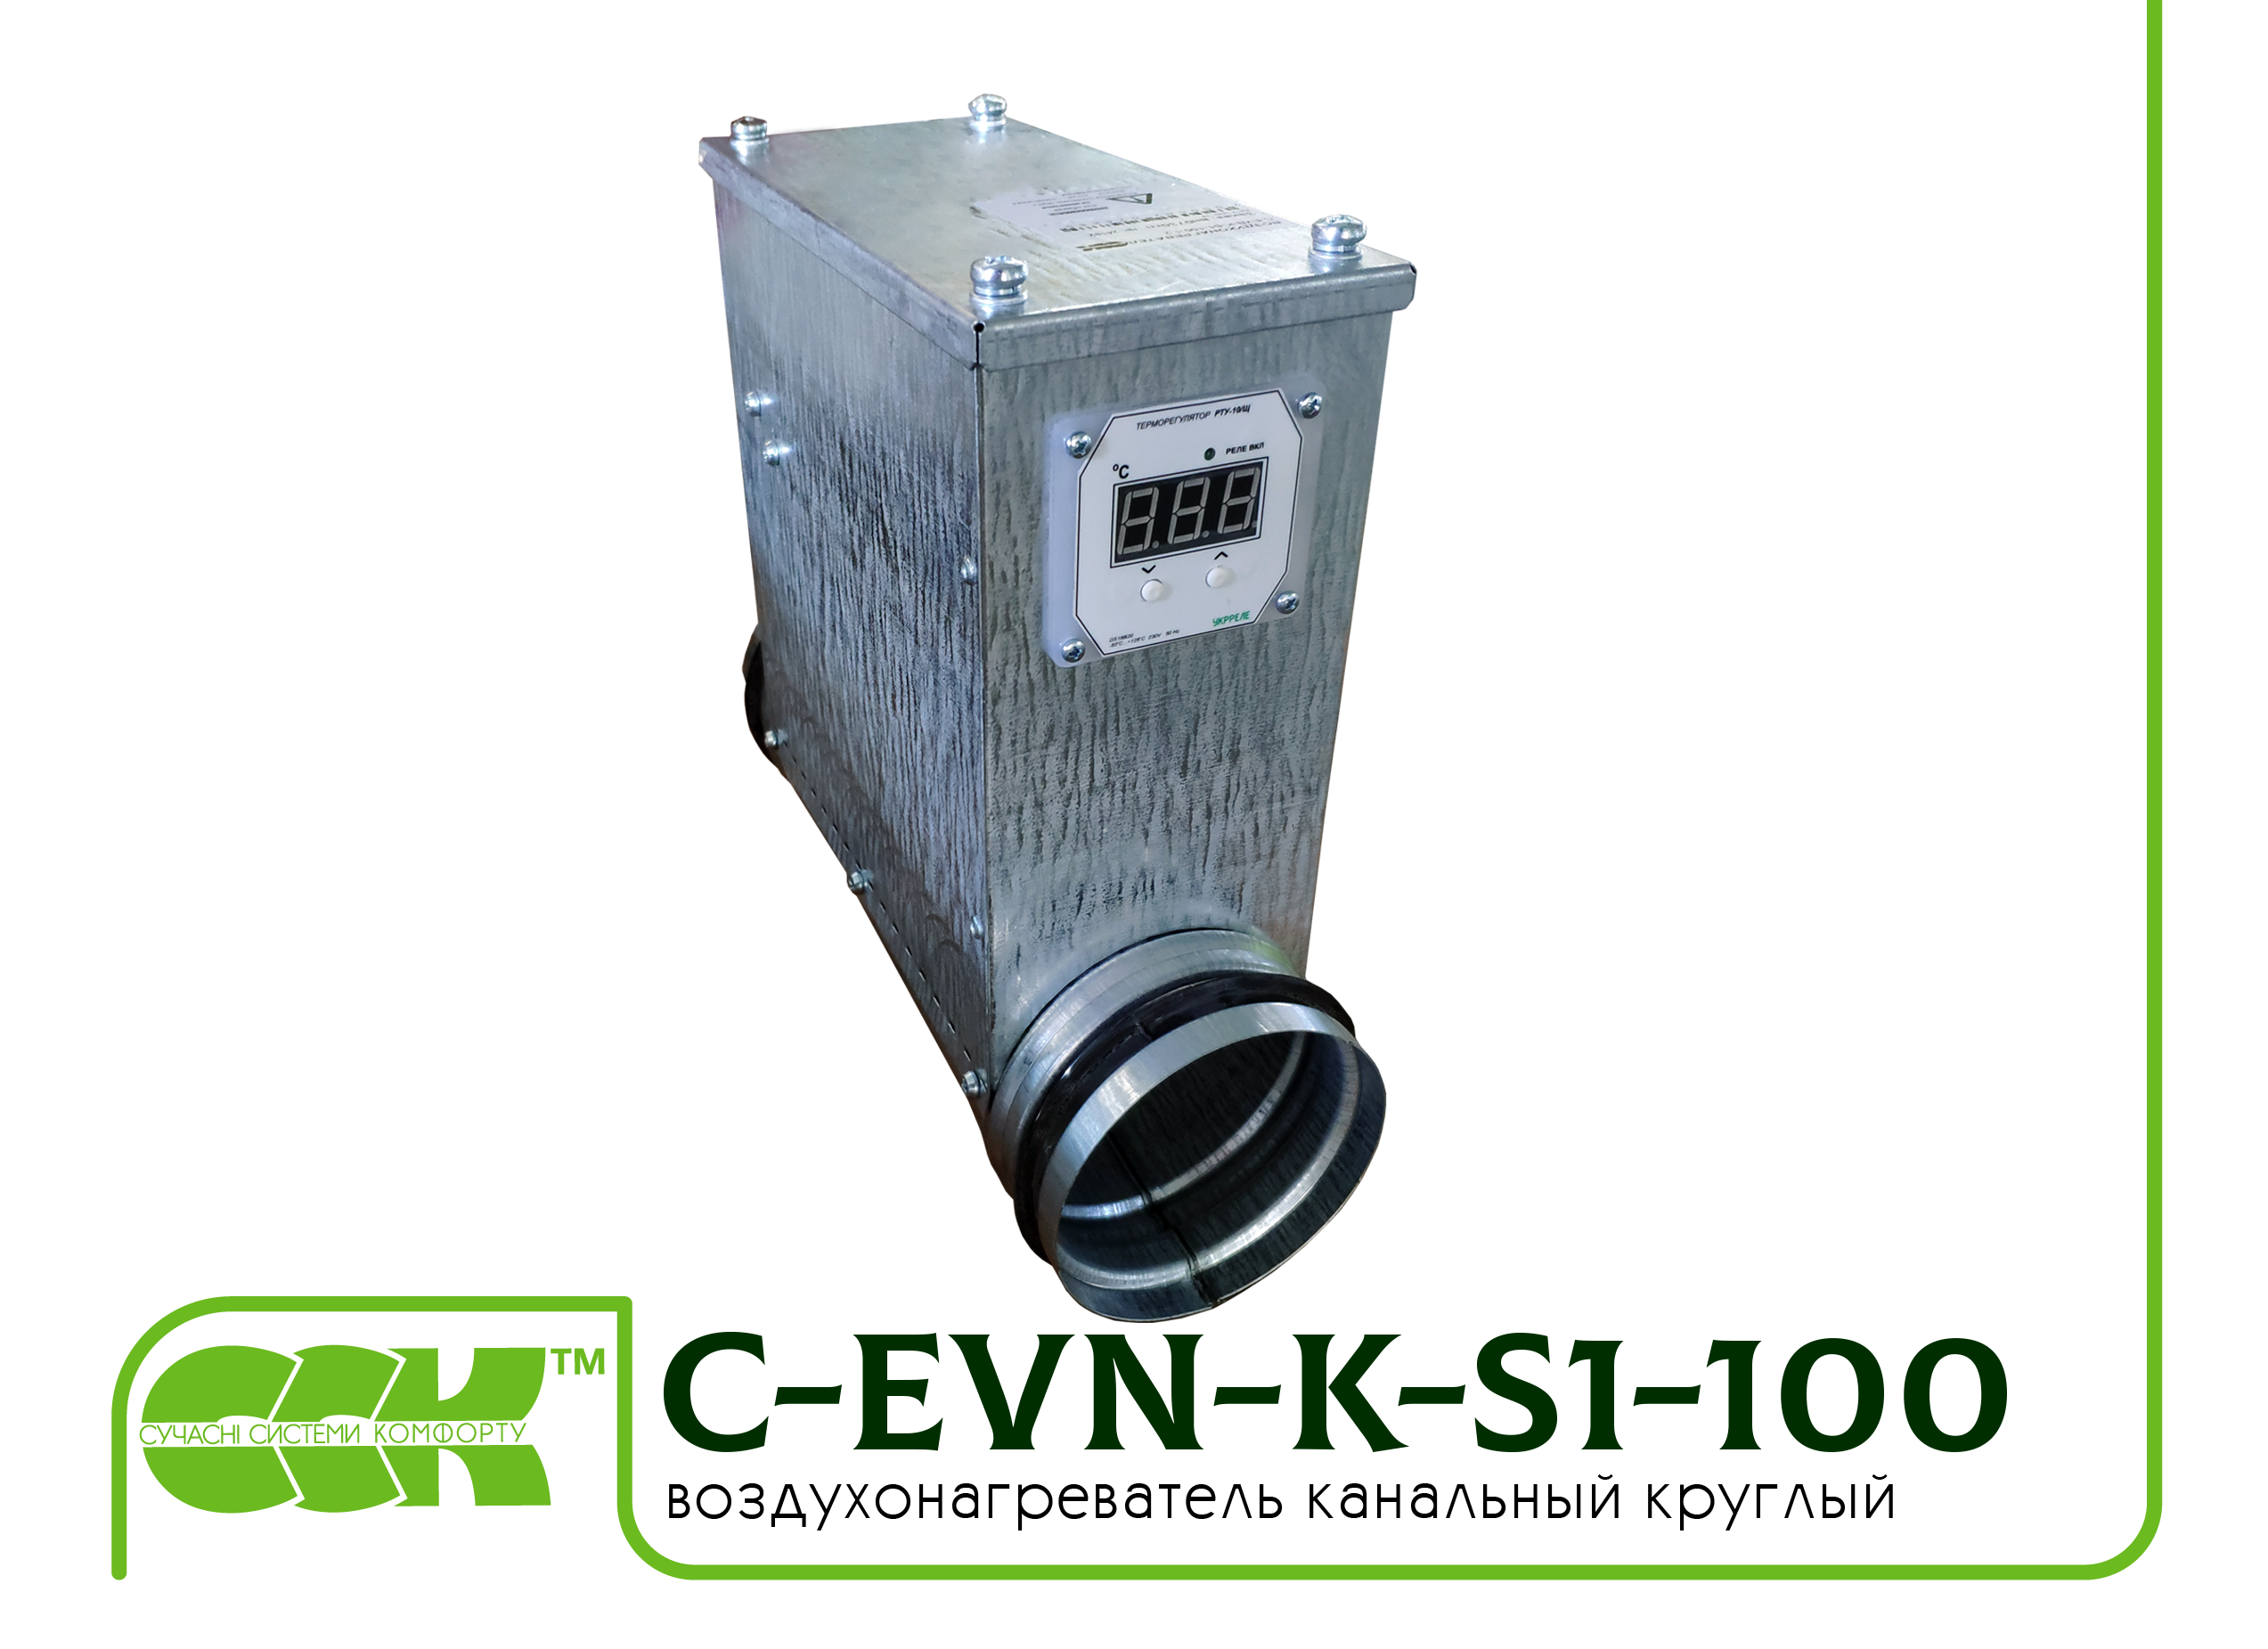 Воздухонагреватель канальный электрический для круглых каналов C-EVN-K-S1-100-1,2